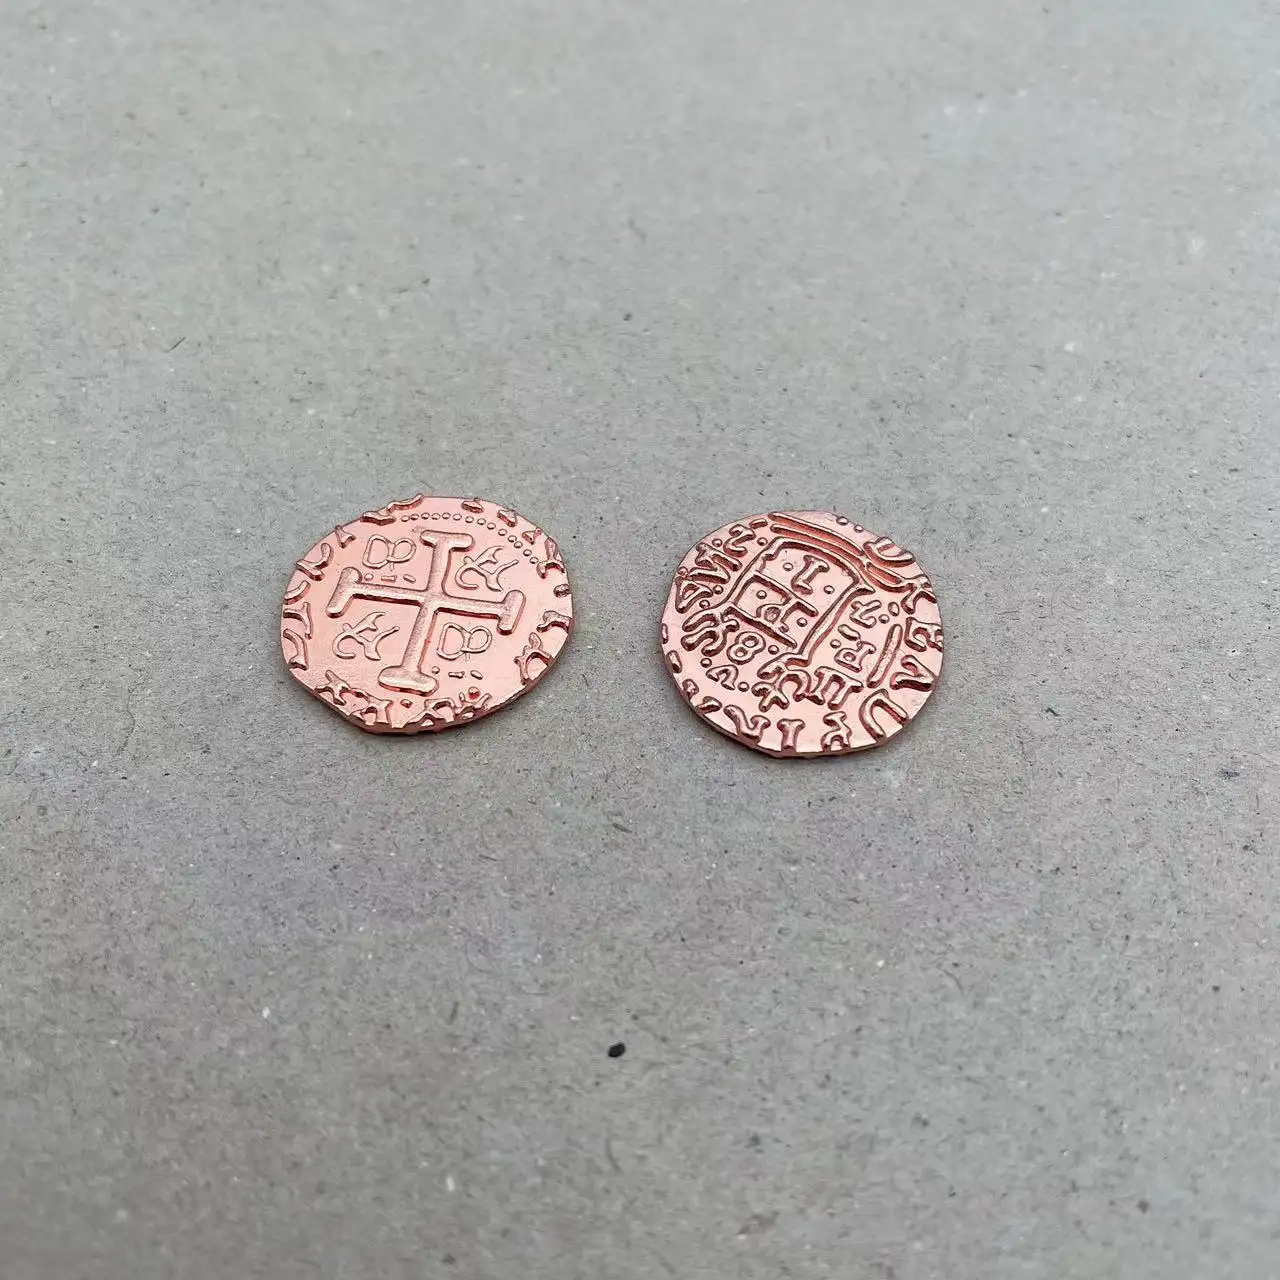 Monete da gioco in metallo prezzo più economico oro e argento multi-size metallo antico pirata monete per il gioco